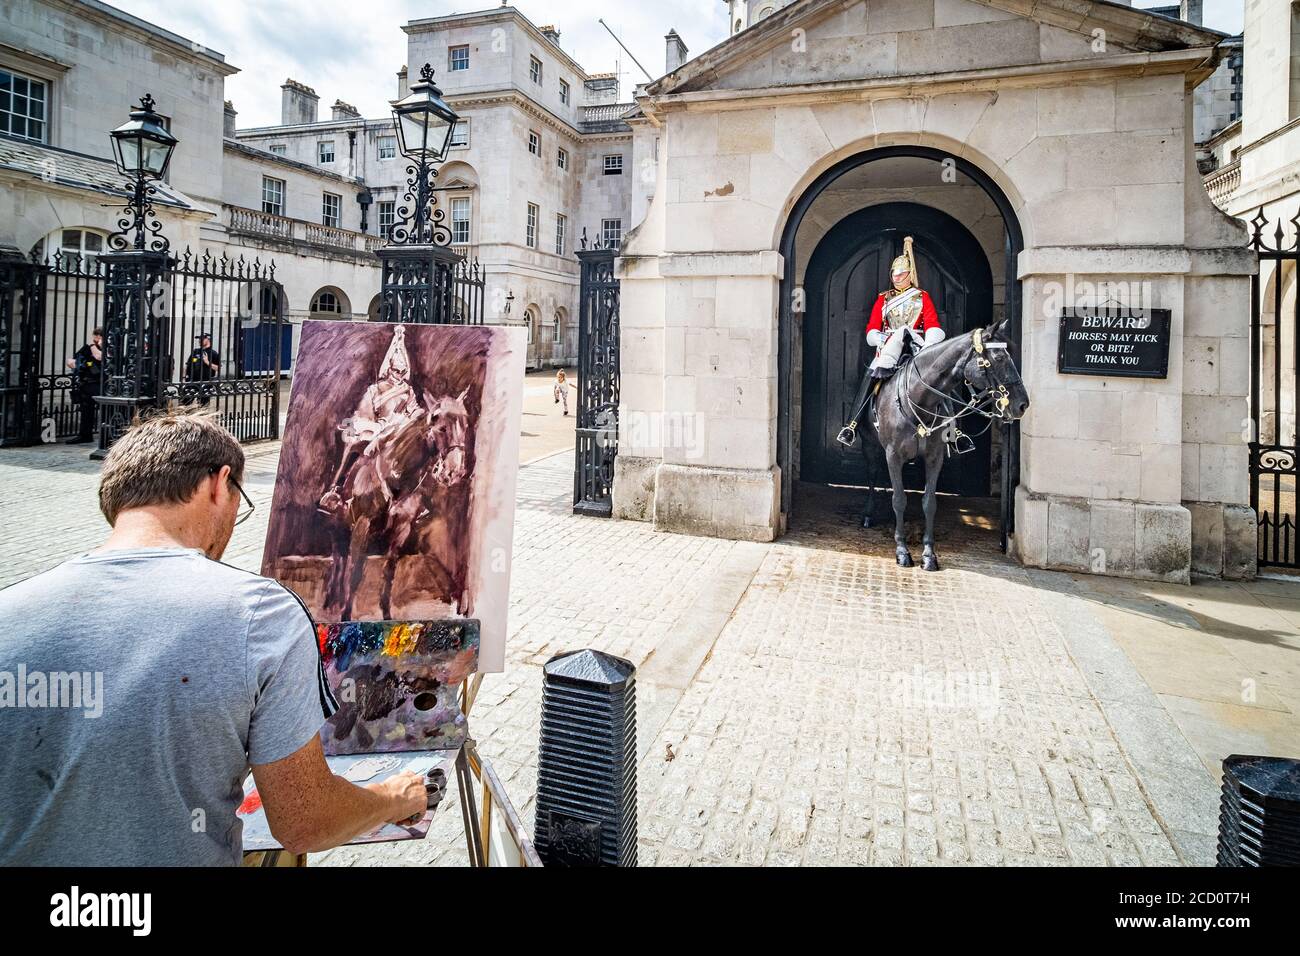 Londres- un hombre pintando una escena en el Cuartel de la Guardia de Caballos, una atracción turística popular en Whitehall, Londres. Foto de stock